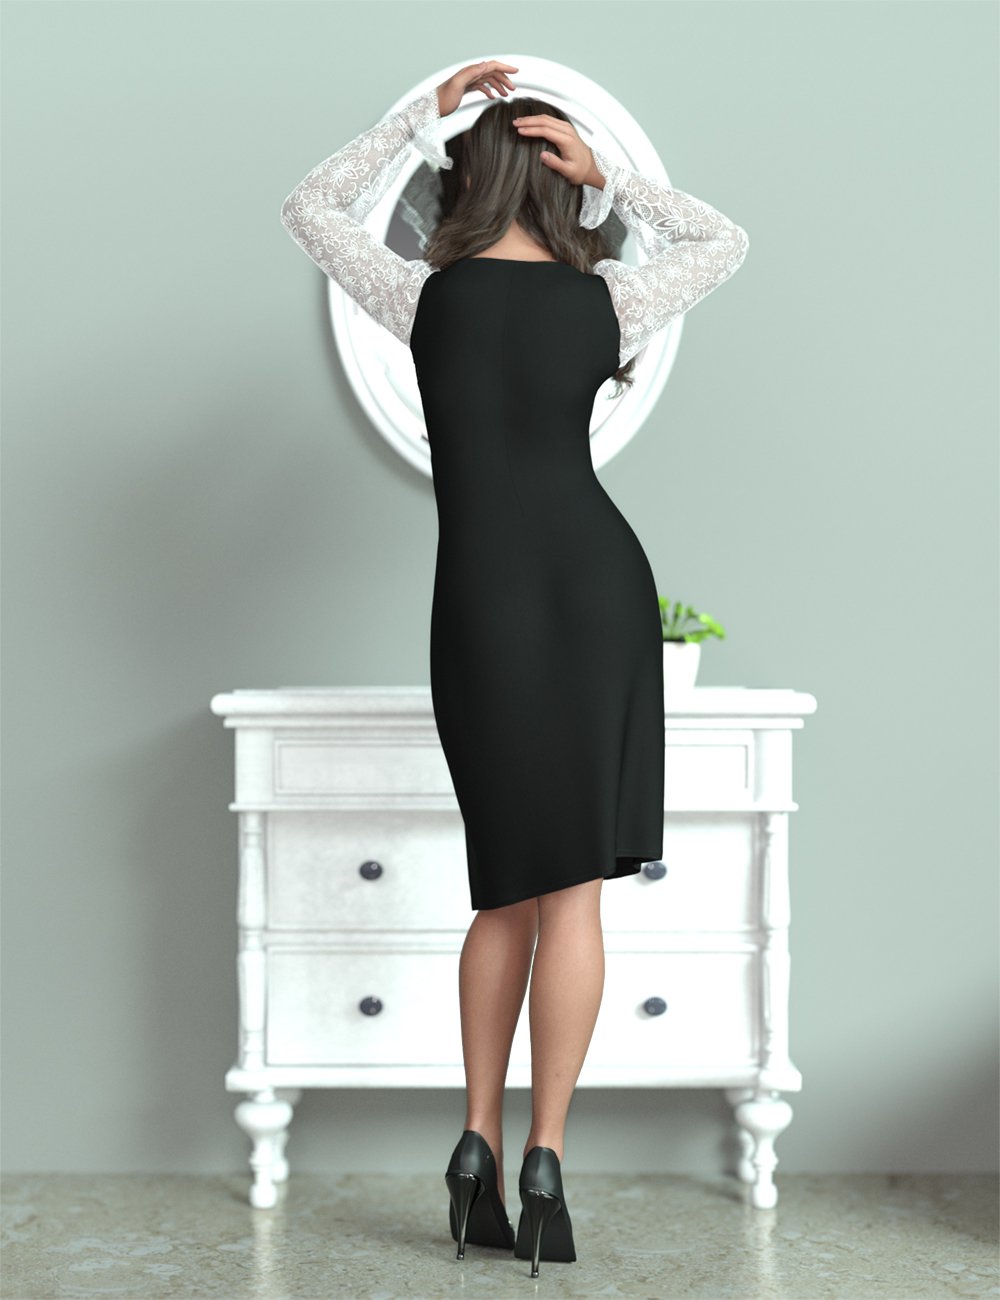 dForce MK Sweet Slit Dress for Genesis 9 by: wsmonkeyking, 3D Models by Daz 3D